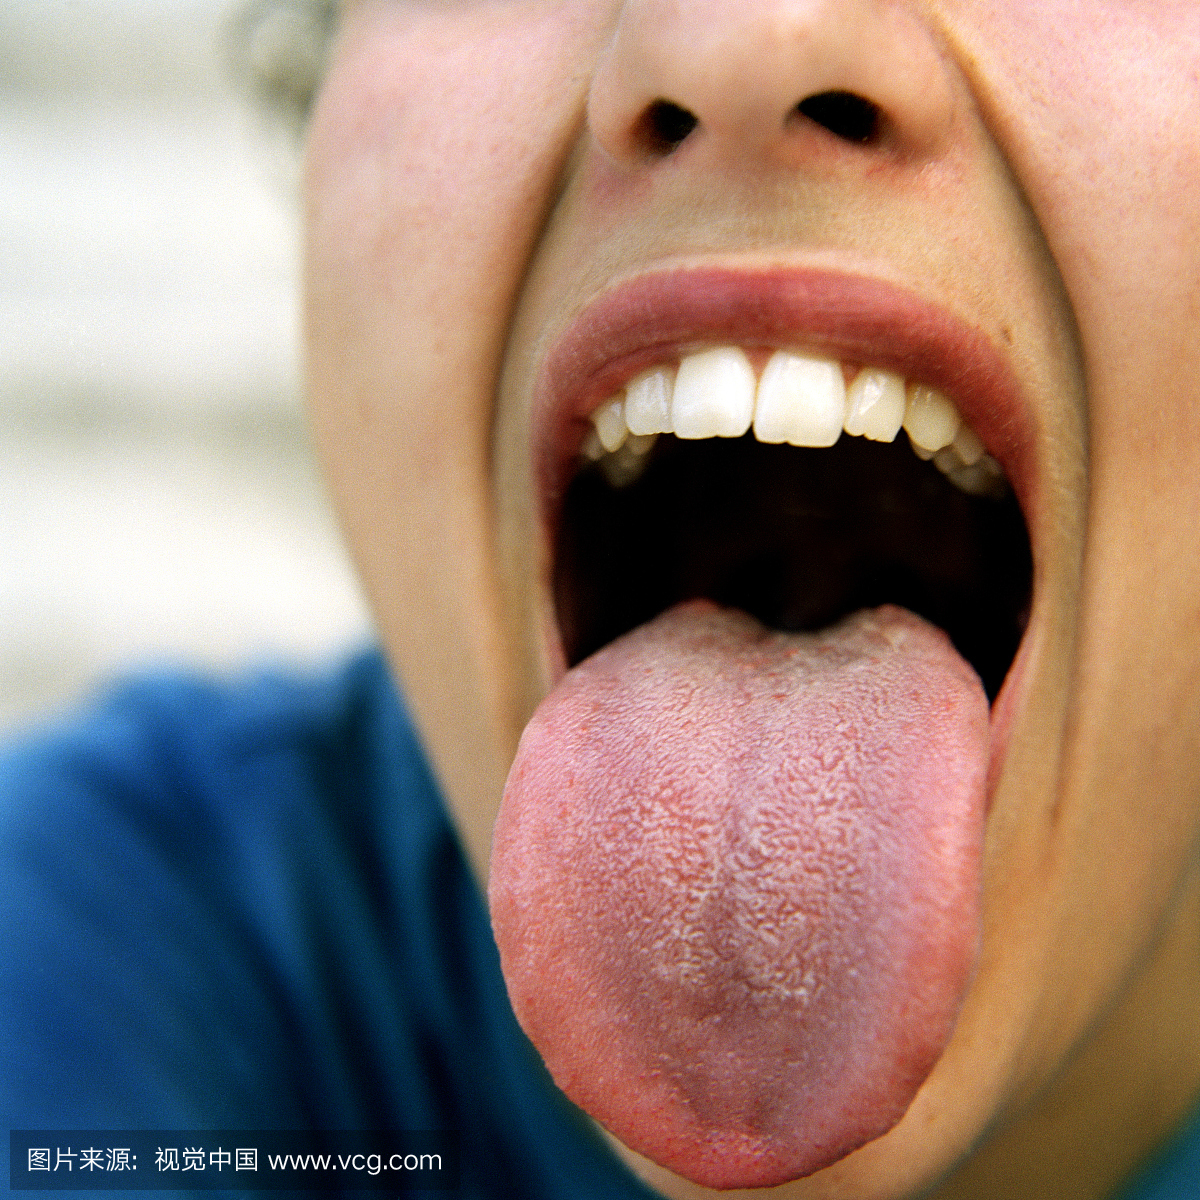 女人伸出舌头,特写镜头